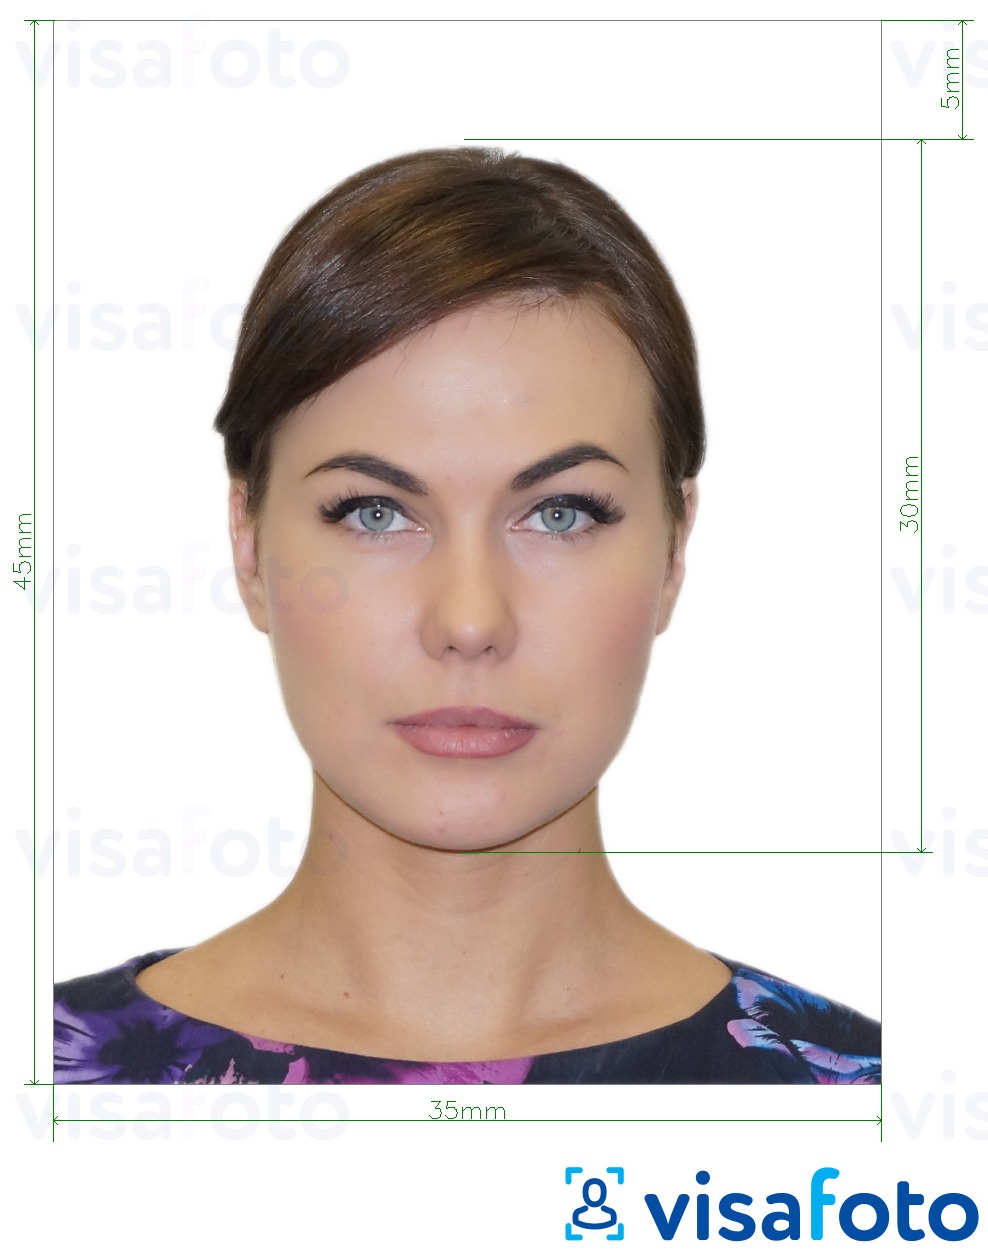 Exemples sur des photos pour Visa Russie via VFS Global 35x45 mm avec les spécifications de taille exactes